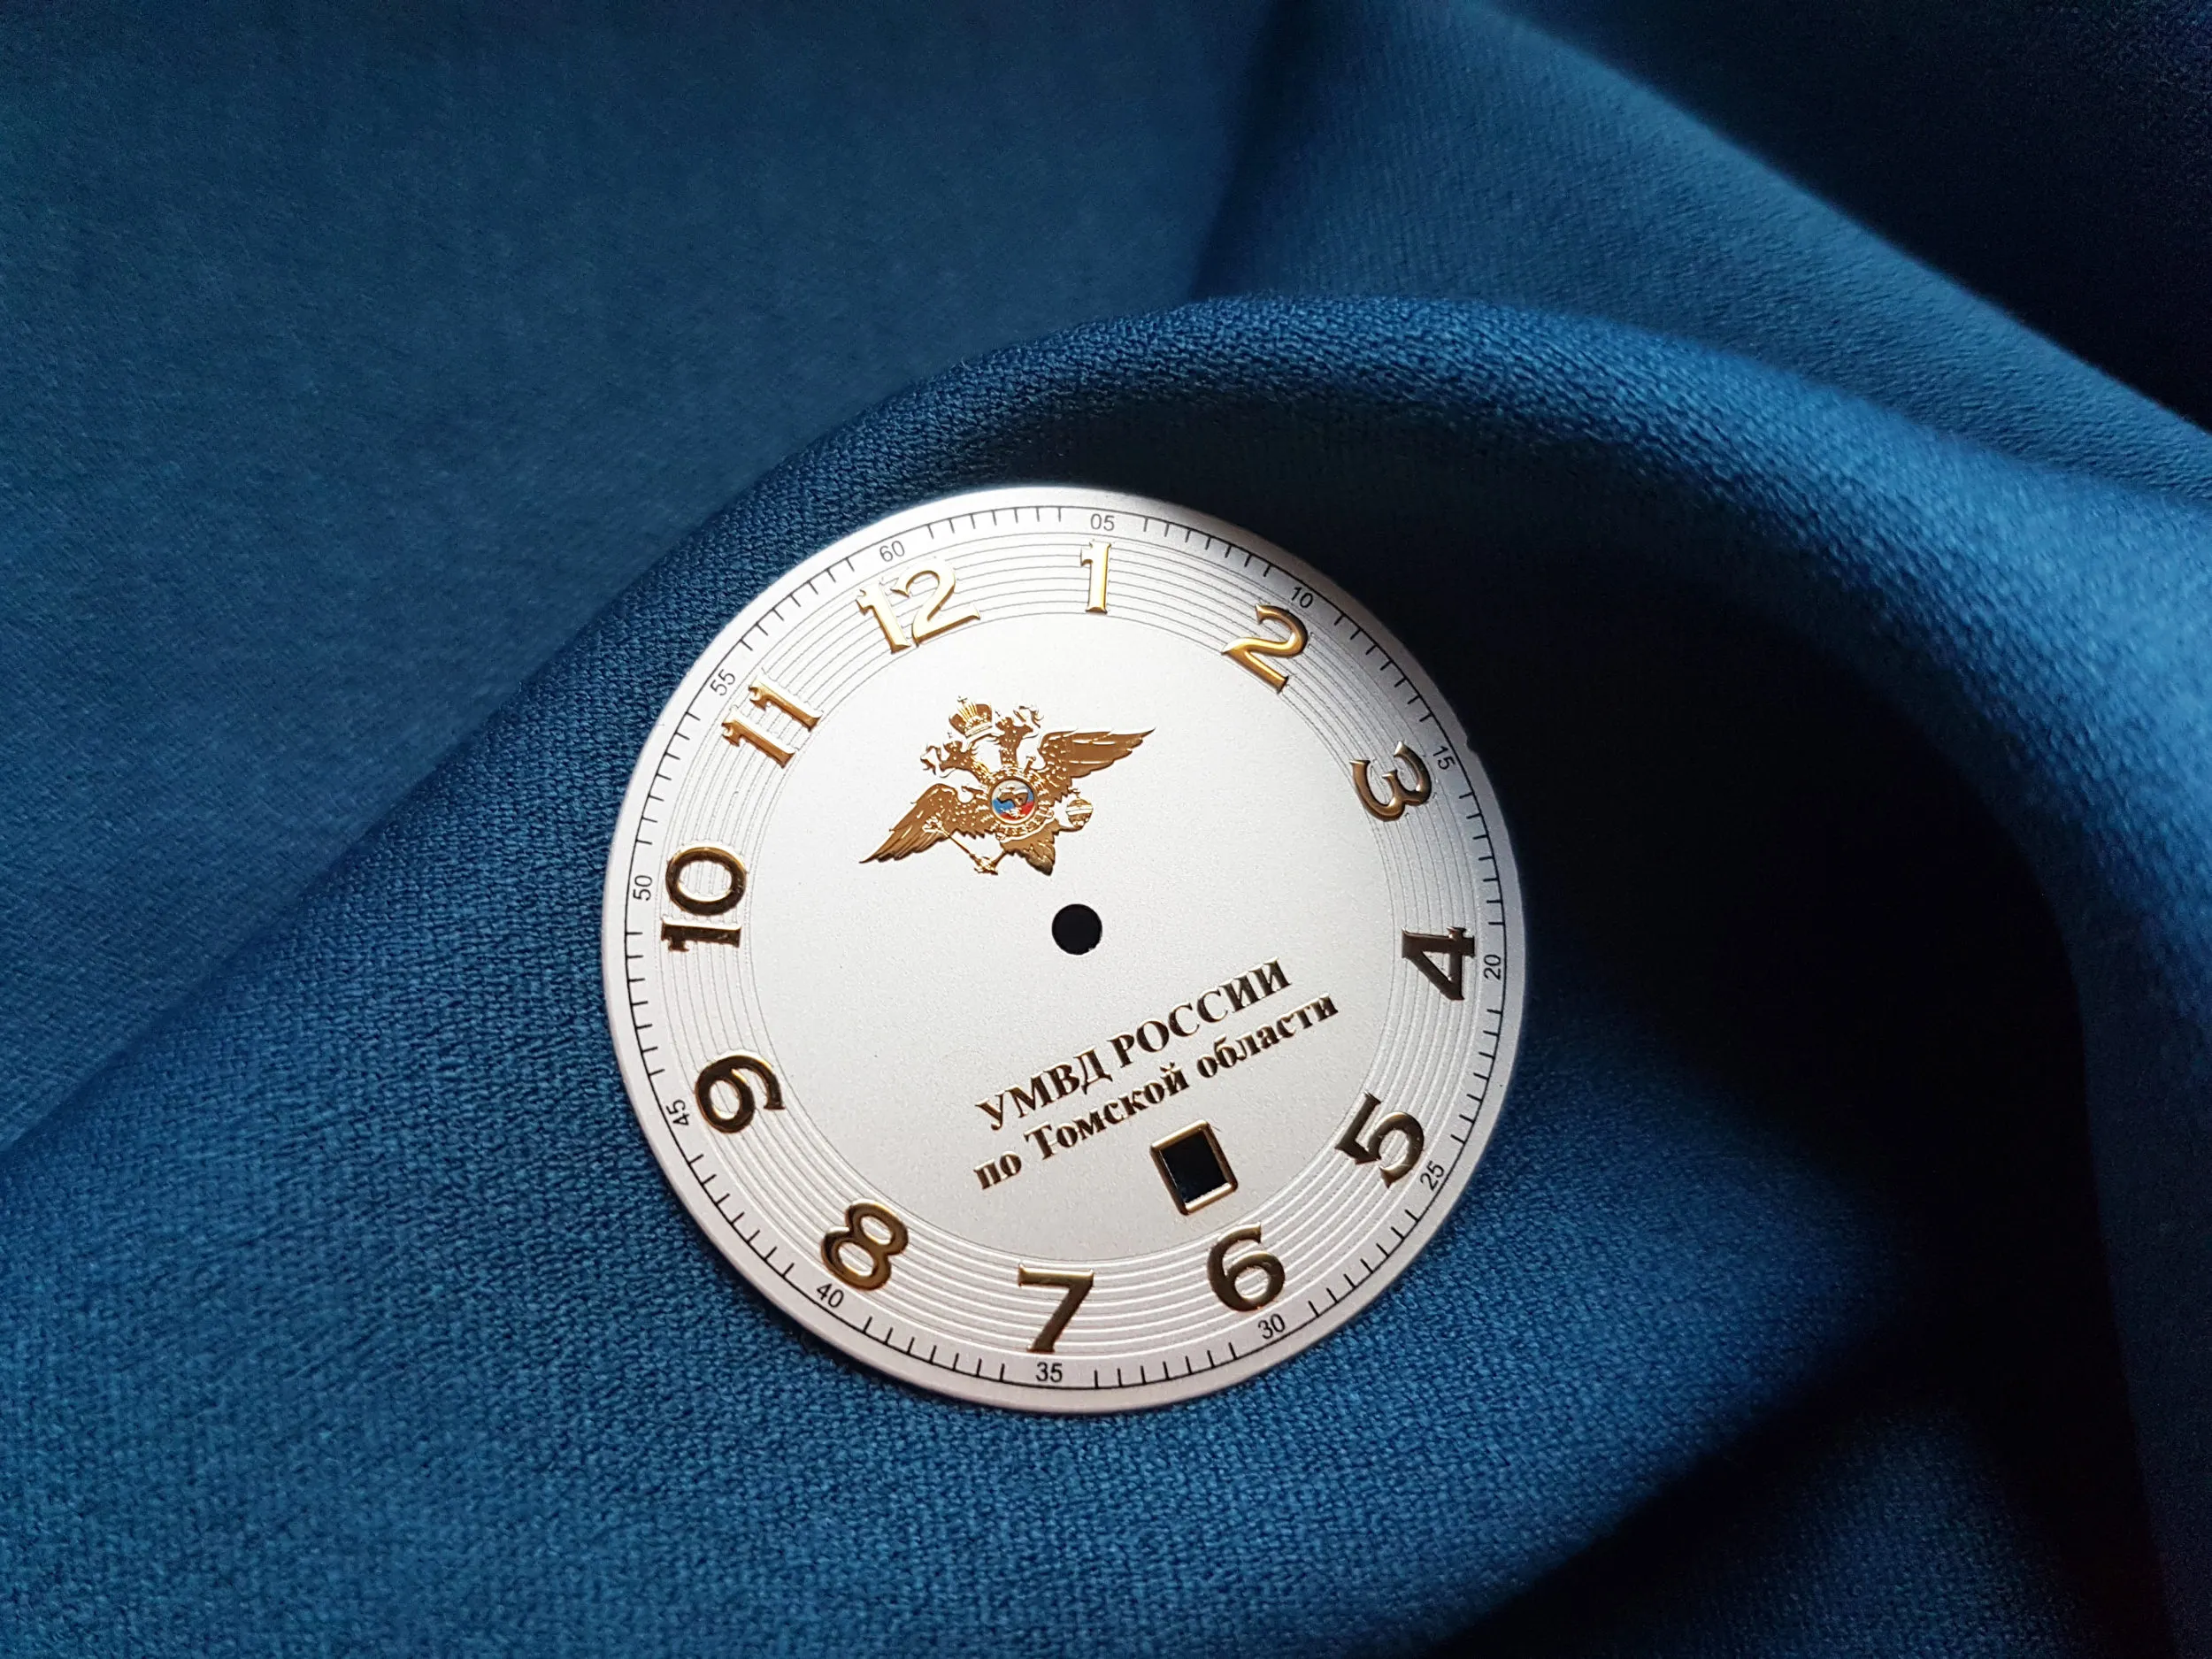 Логотип наручных часов. Часы наручные логотип фирм. Наручные часы с логотипом компании. Часы с логотипом компании. Корпоративные наручные часы с логотипом.